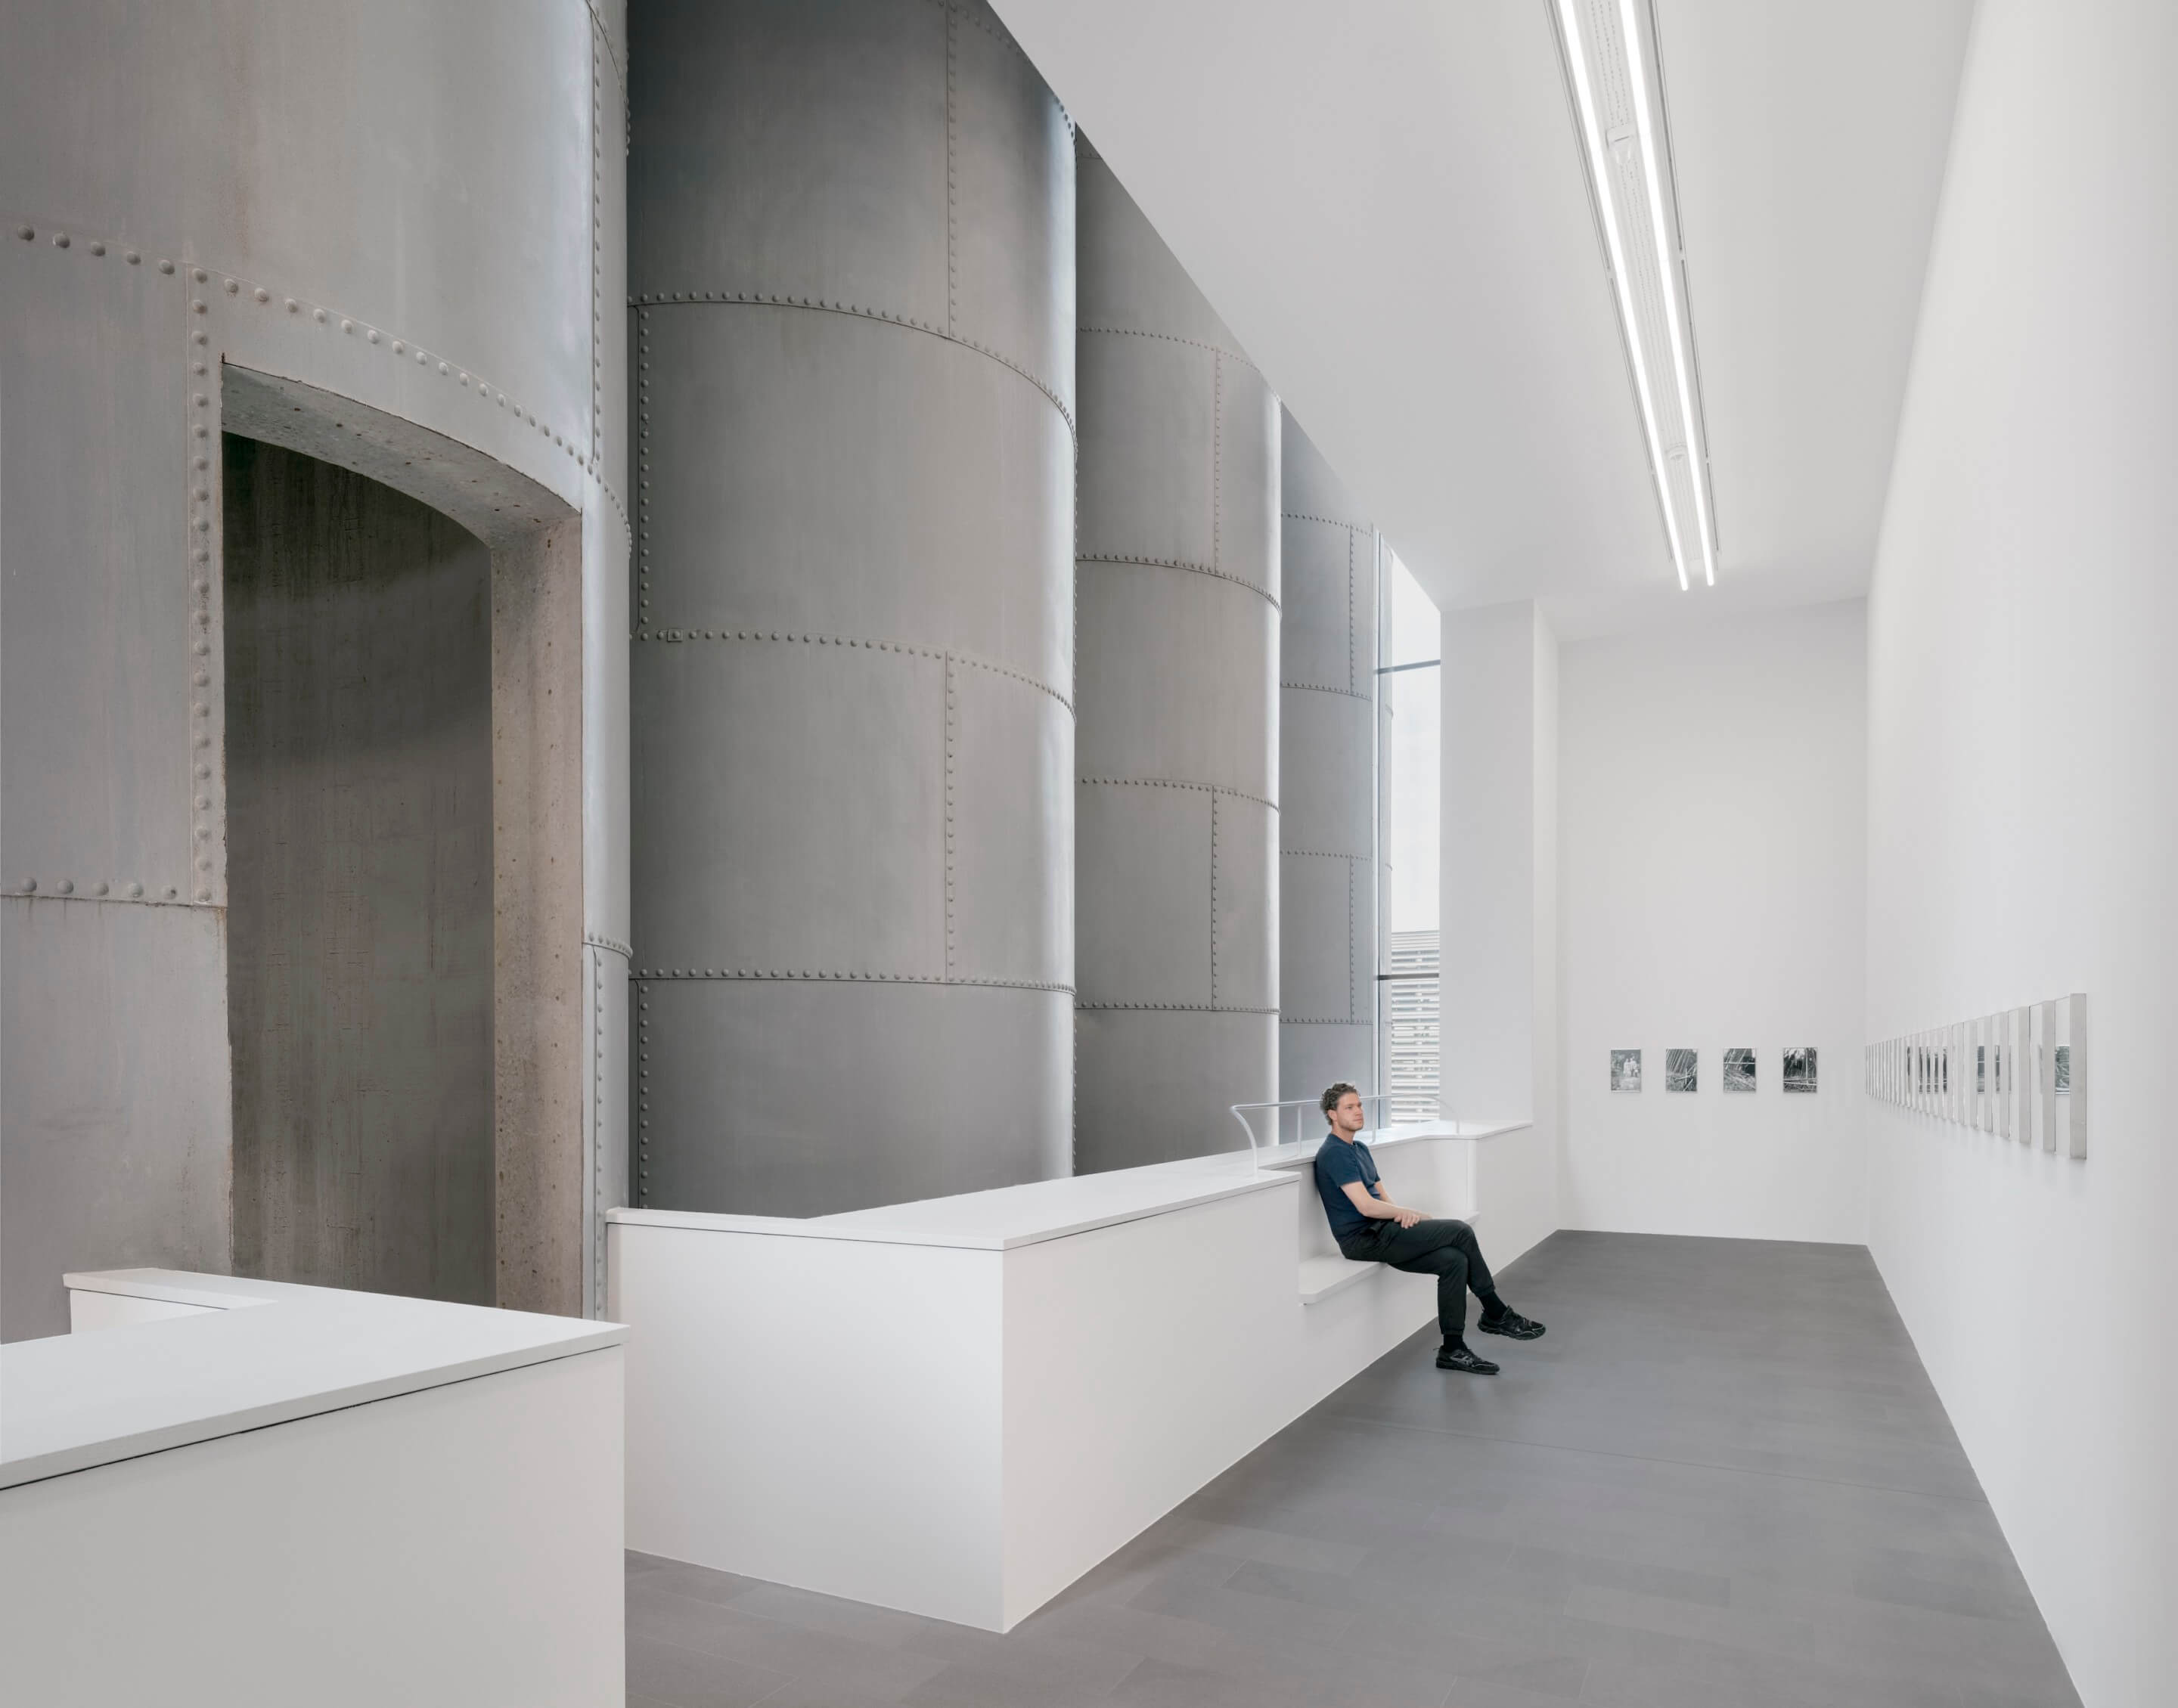 steel grain silos inside of a gallery space